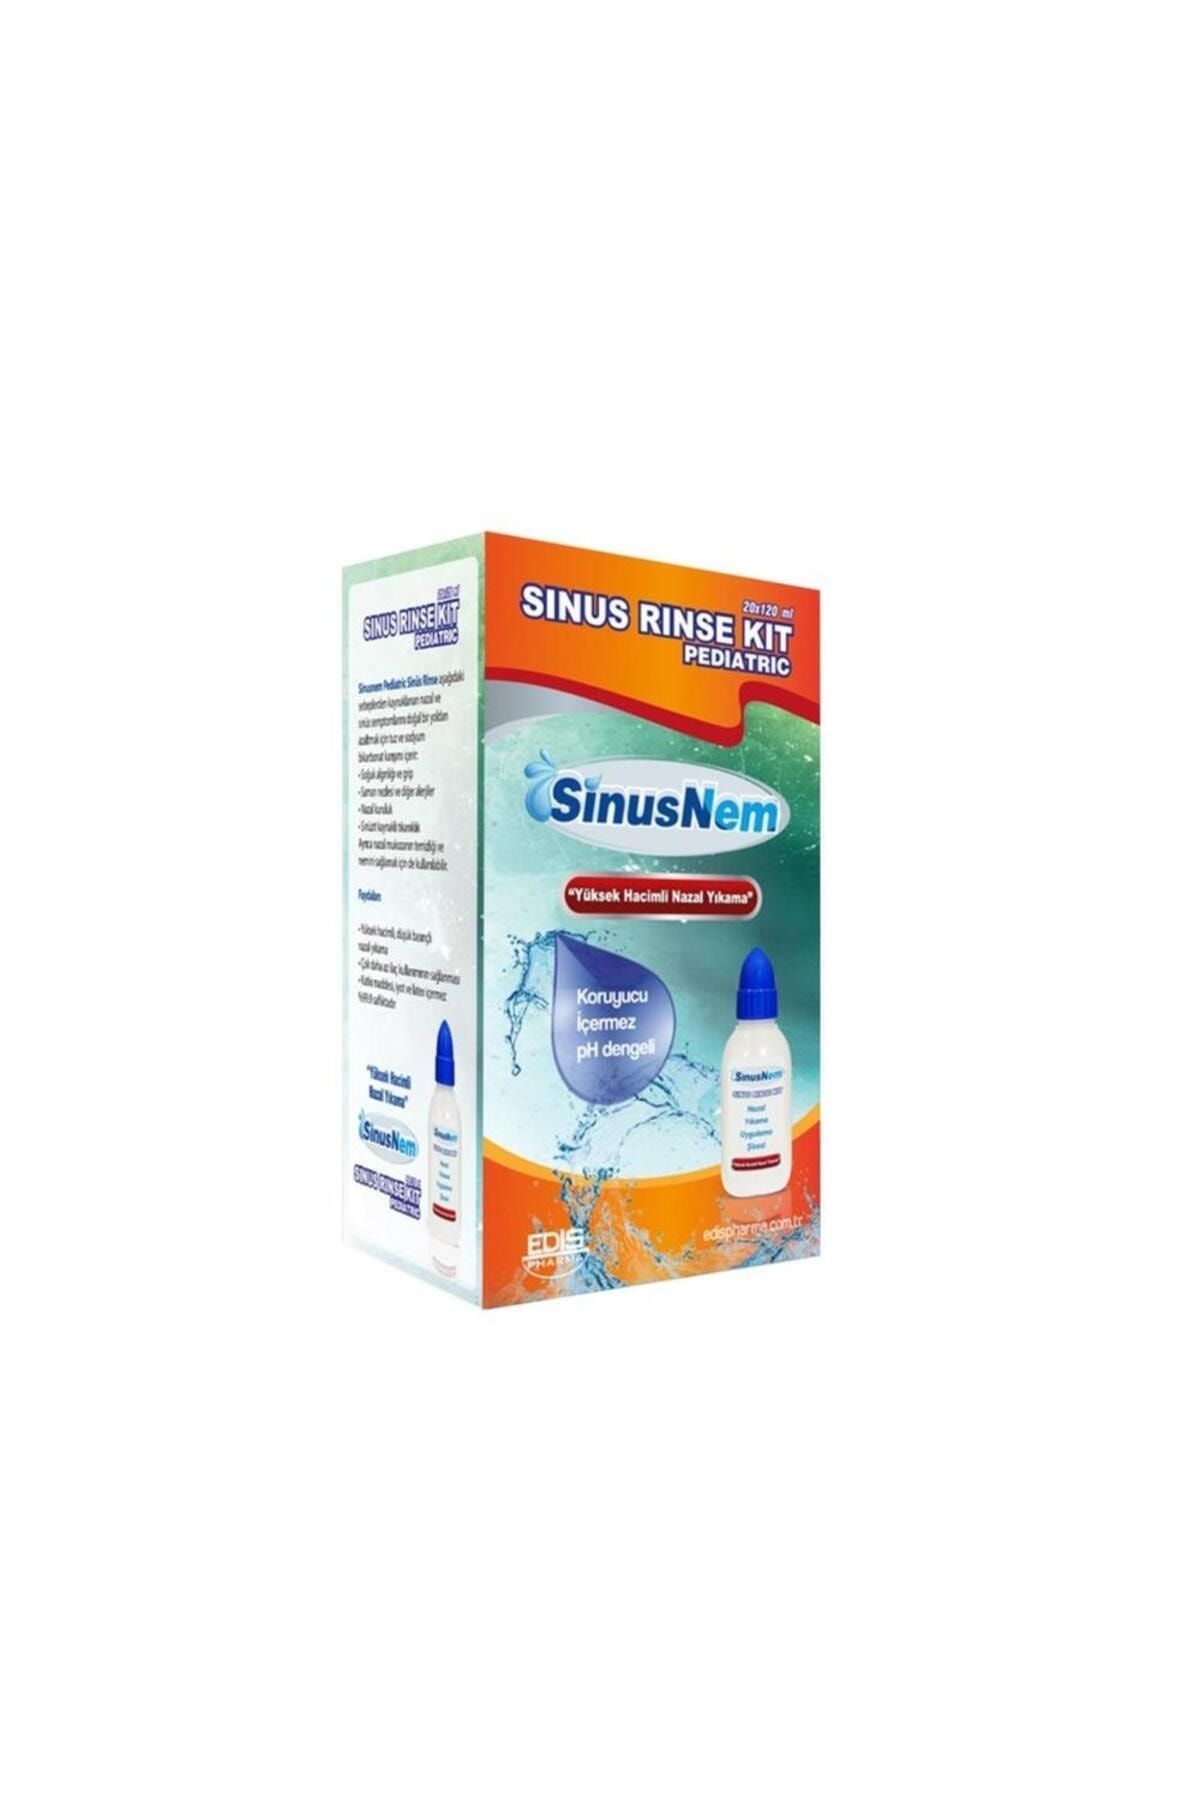 EDİS PHARMA Sinus Nem Sinus Rinse Kit Pediatric 20 X120 Ml - Skt:01/2028